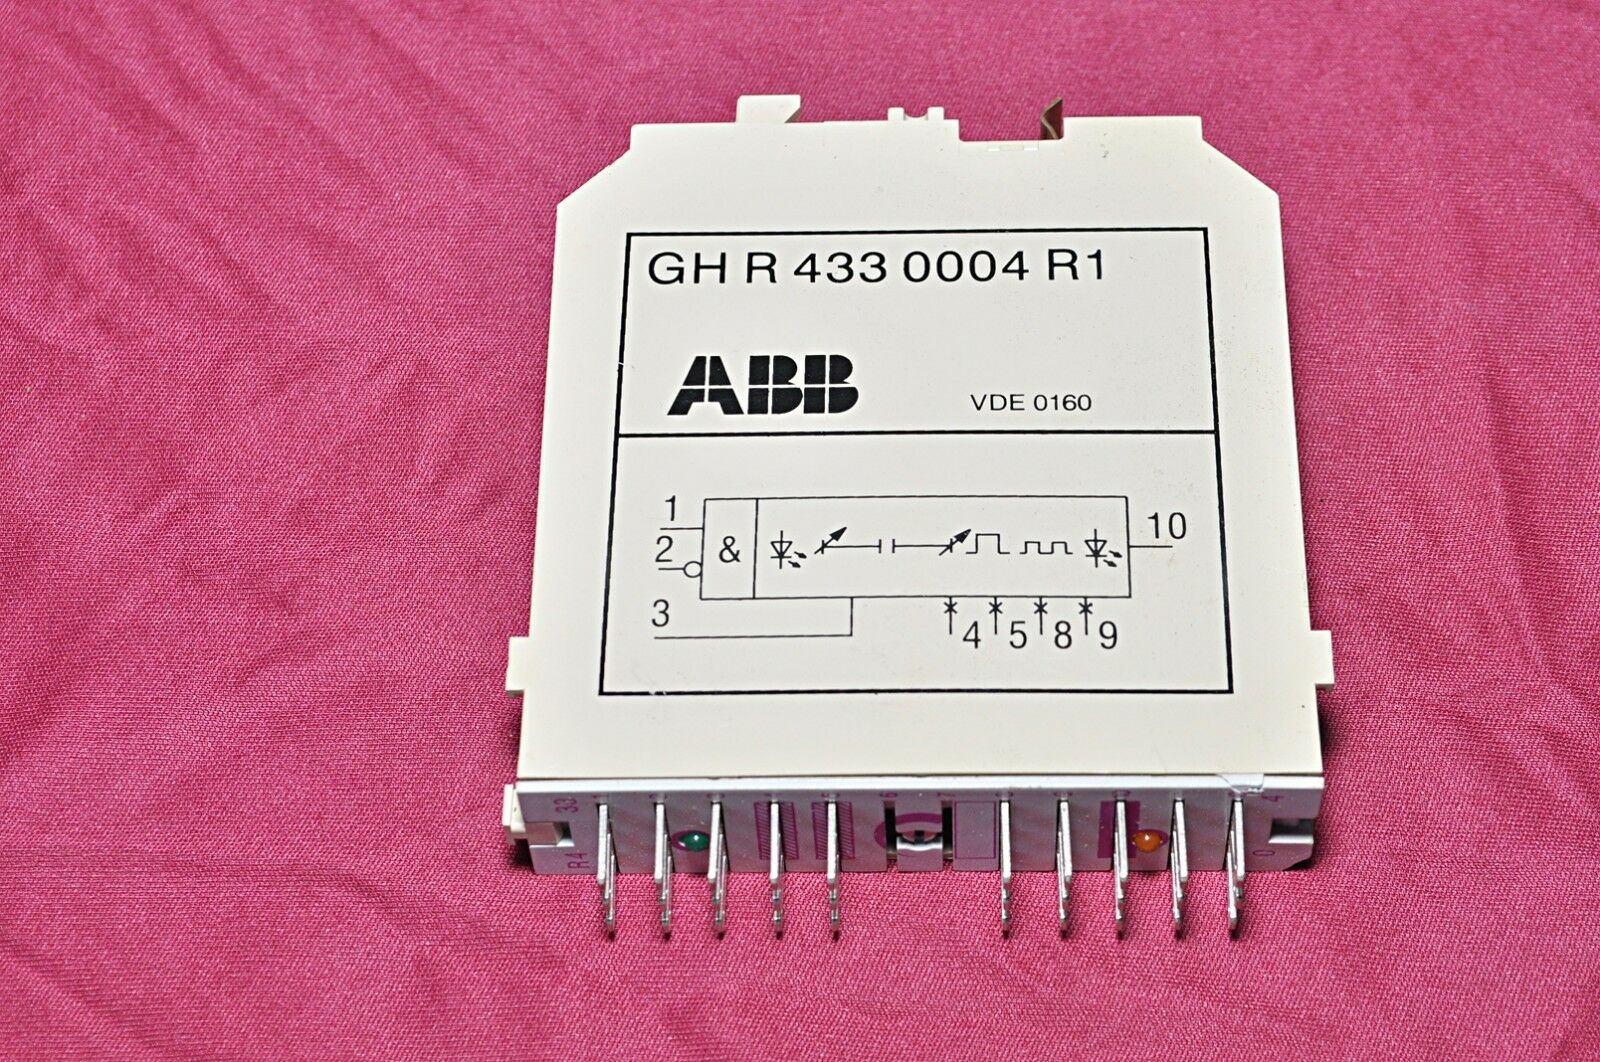 Abb gh r 433 0004 r1 module relay